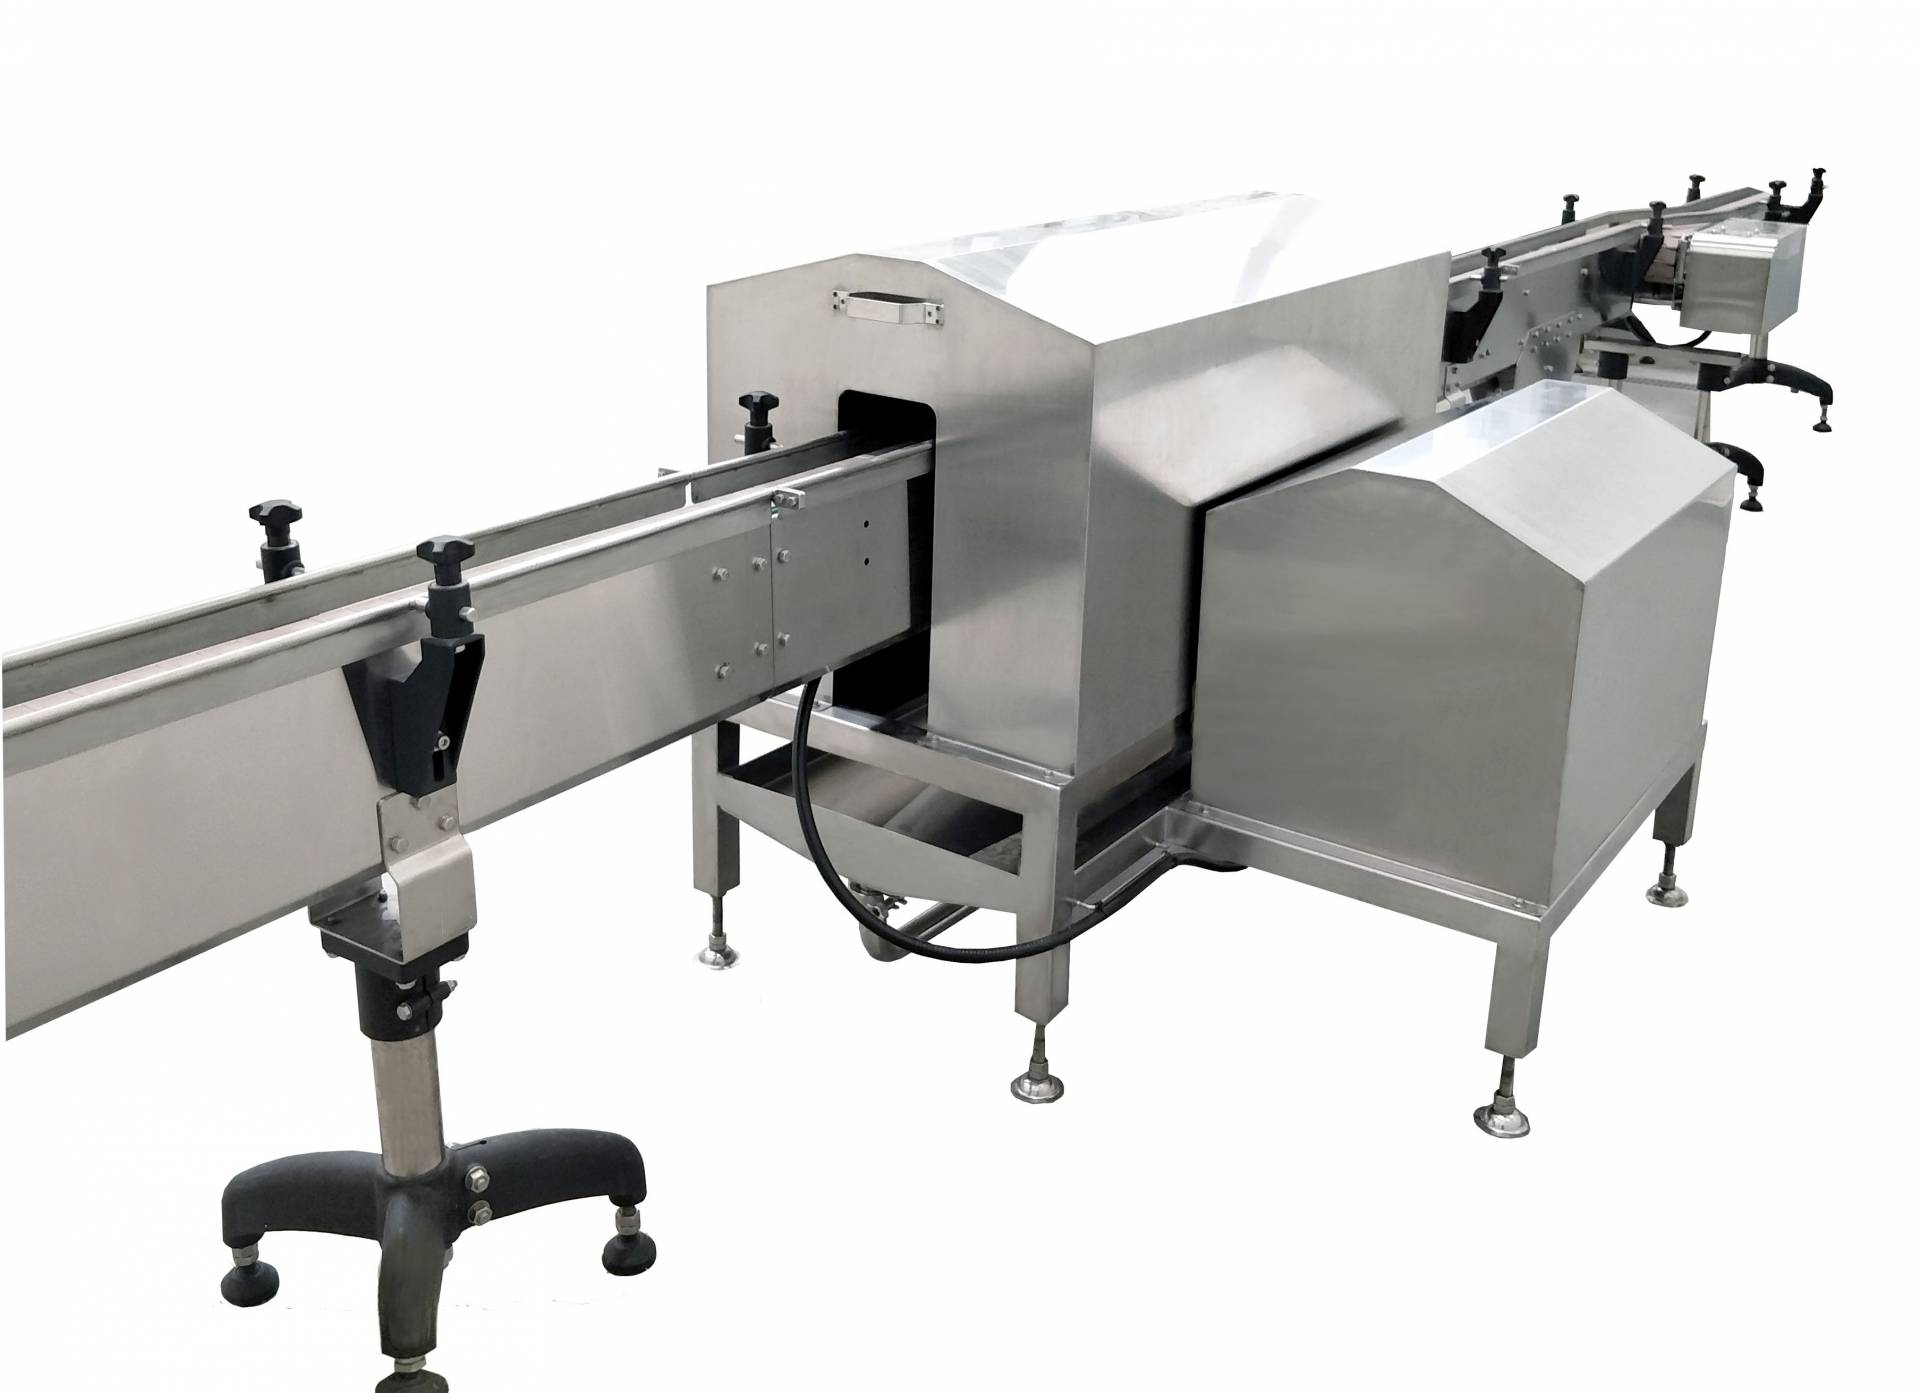 Luchtmesdroogapparatuur is een van de machines in de tofu-productielijn.